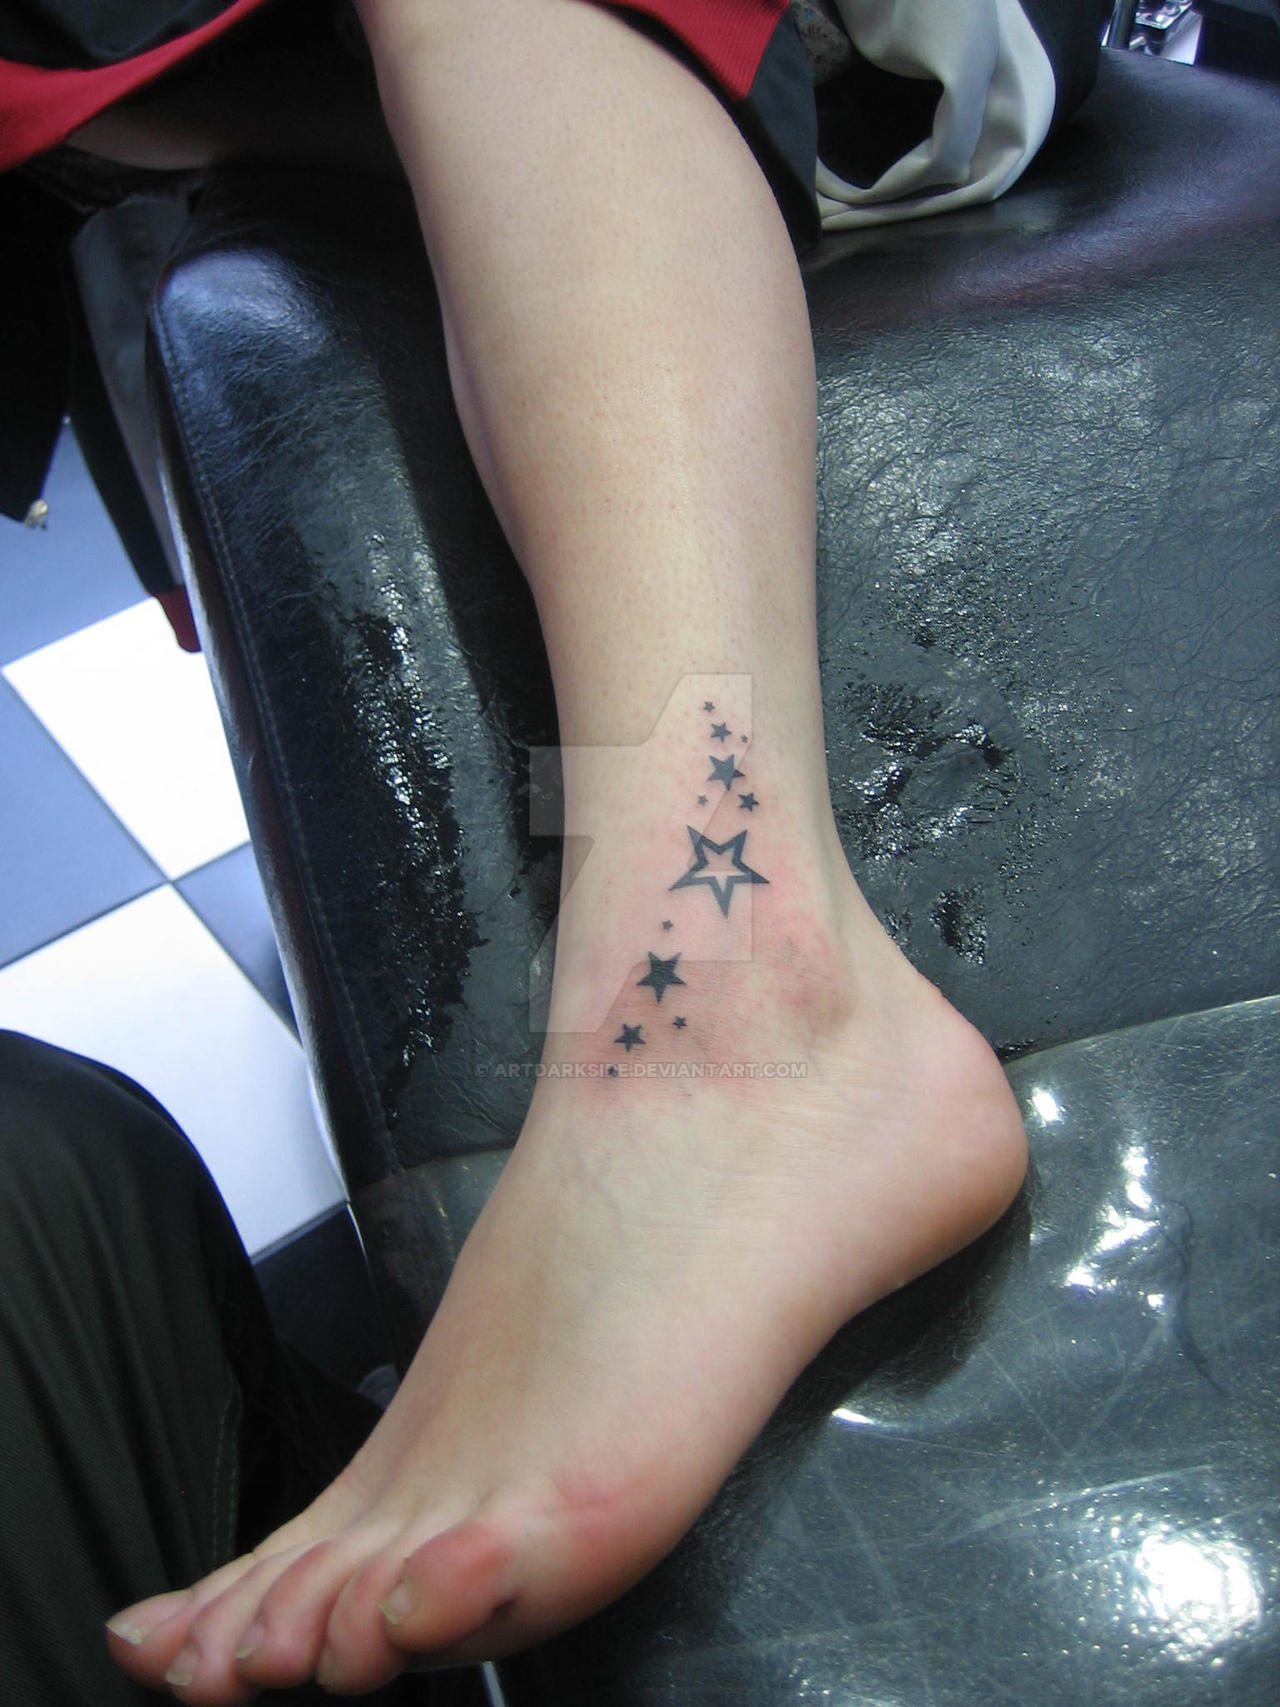 star foot tattoo by artdarkside on DeviantArt